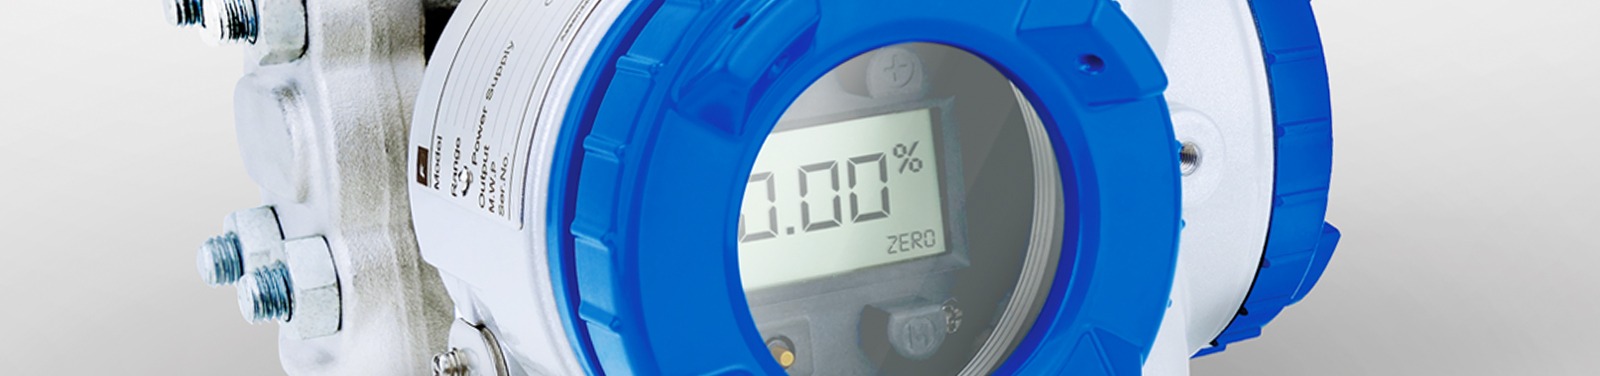 I sensori di pressione possono essere dotati di un indicatore digitale 